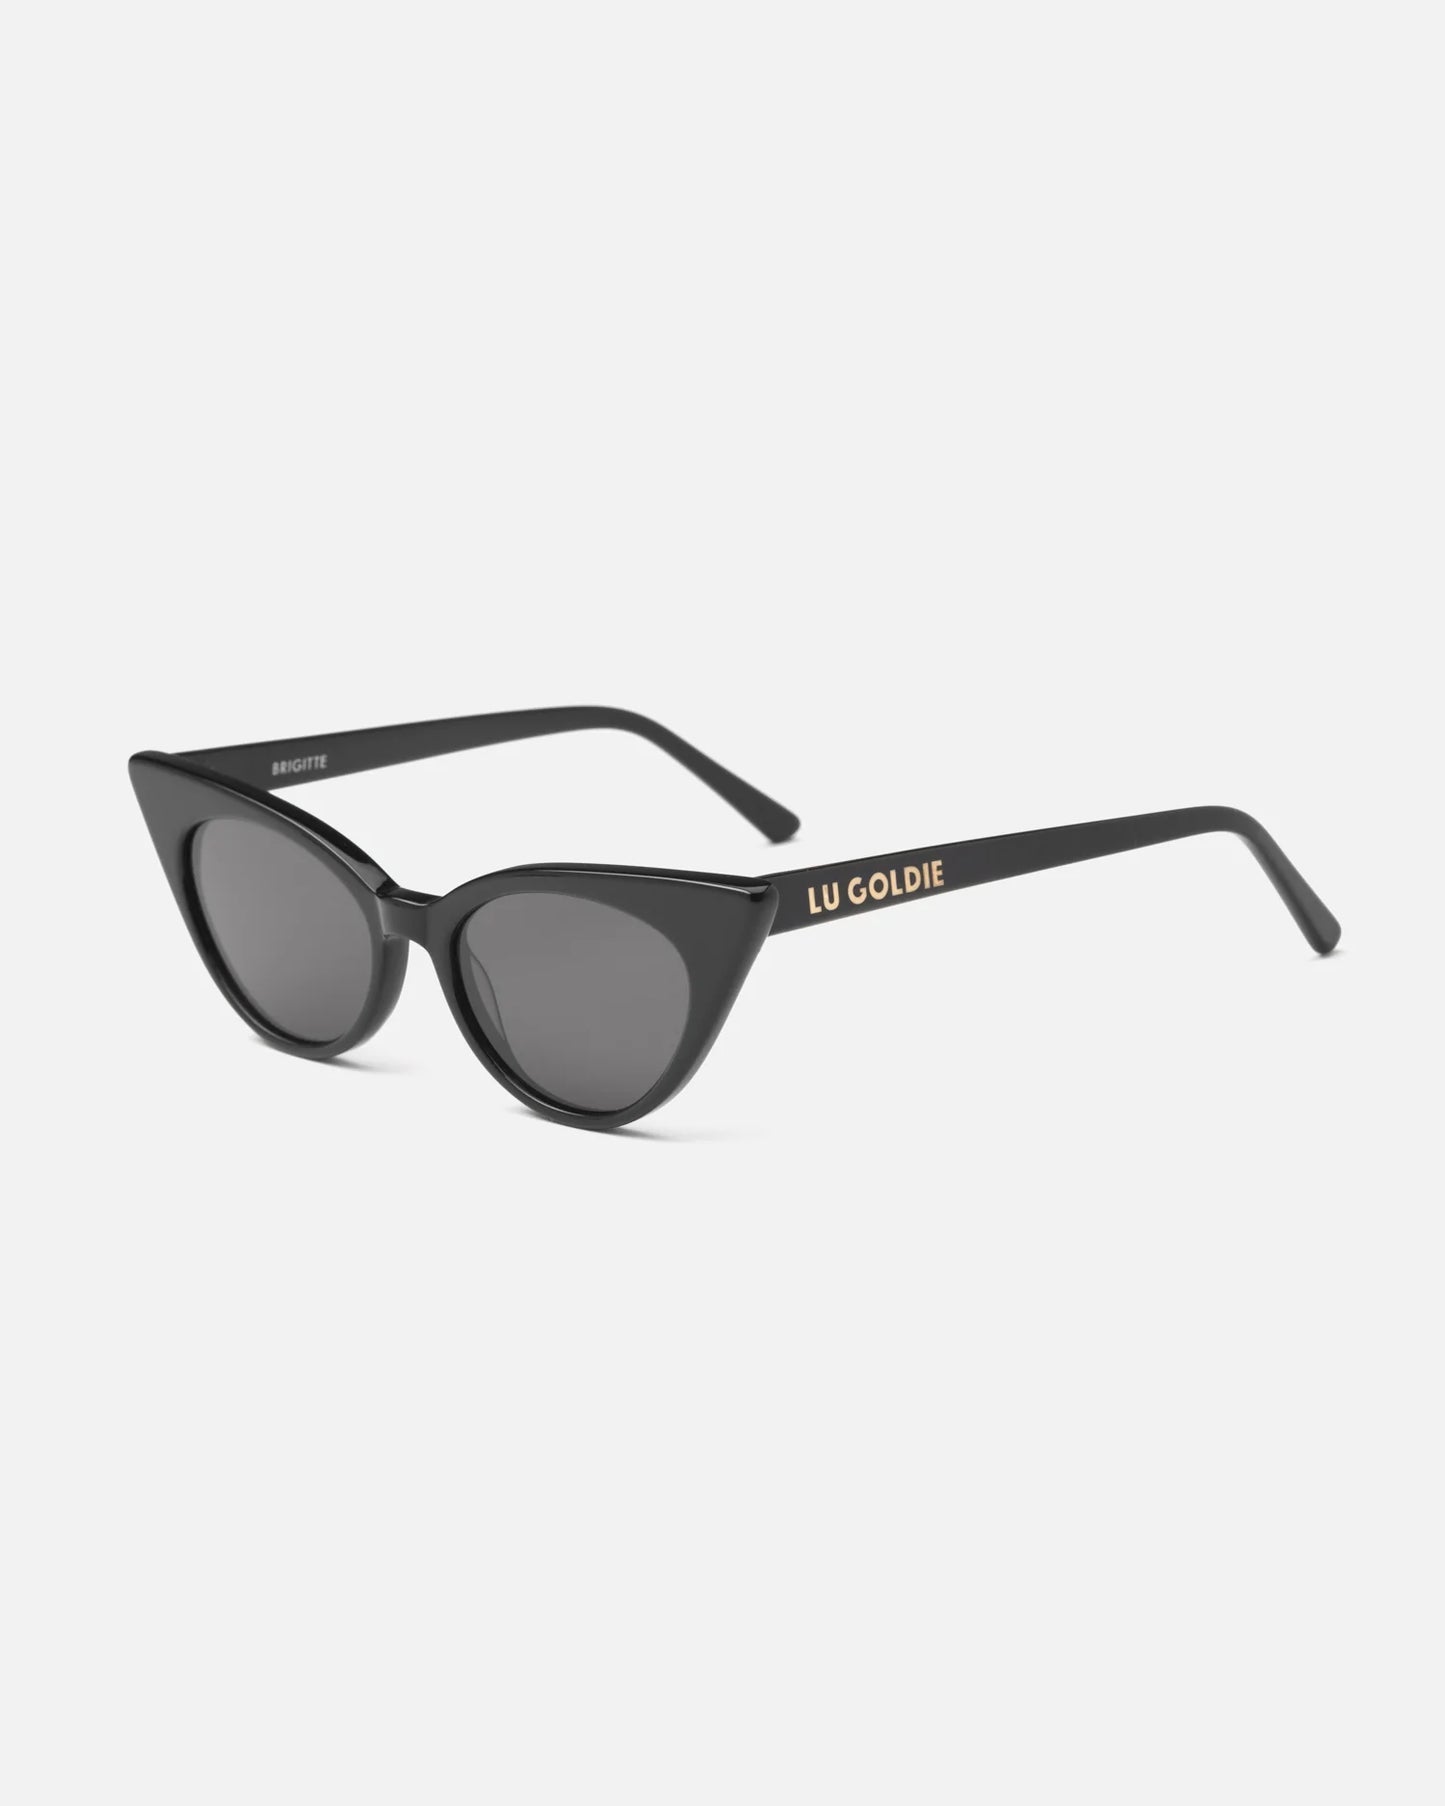 Brigitte - Black Sunglasses